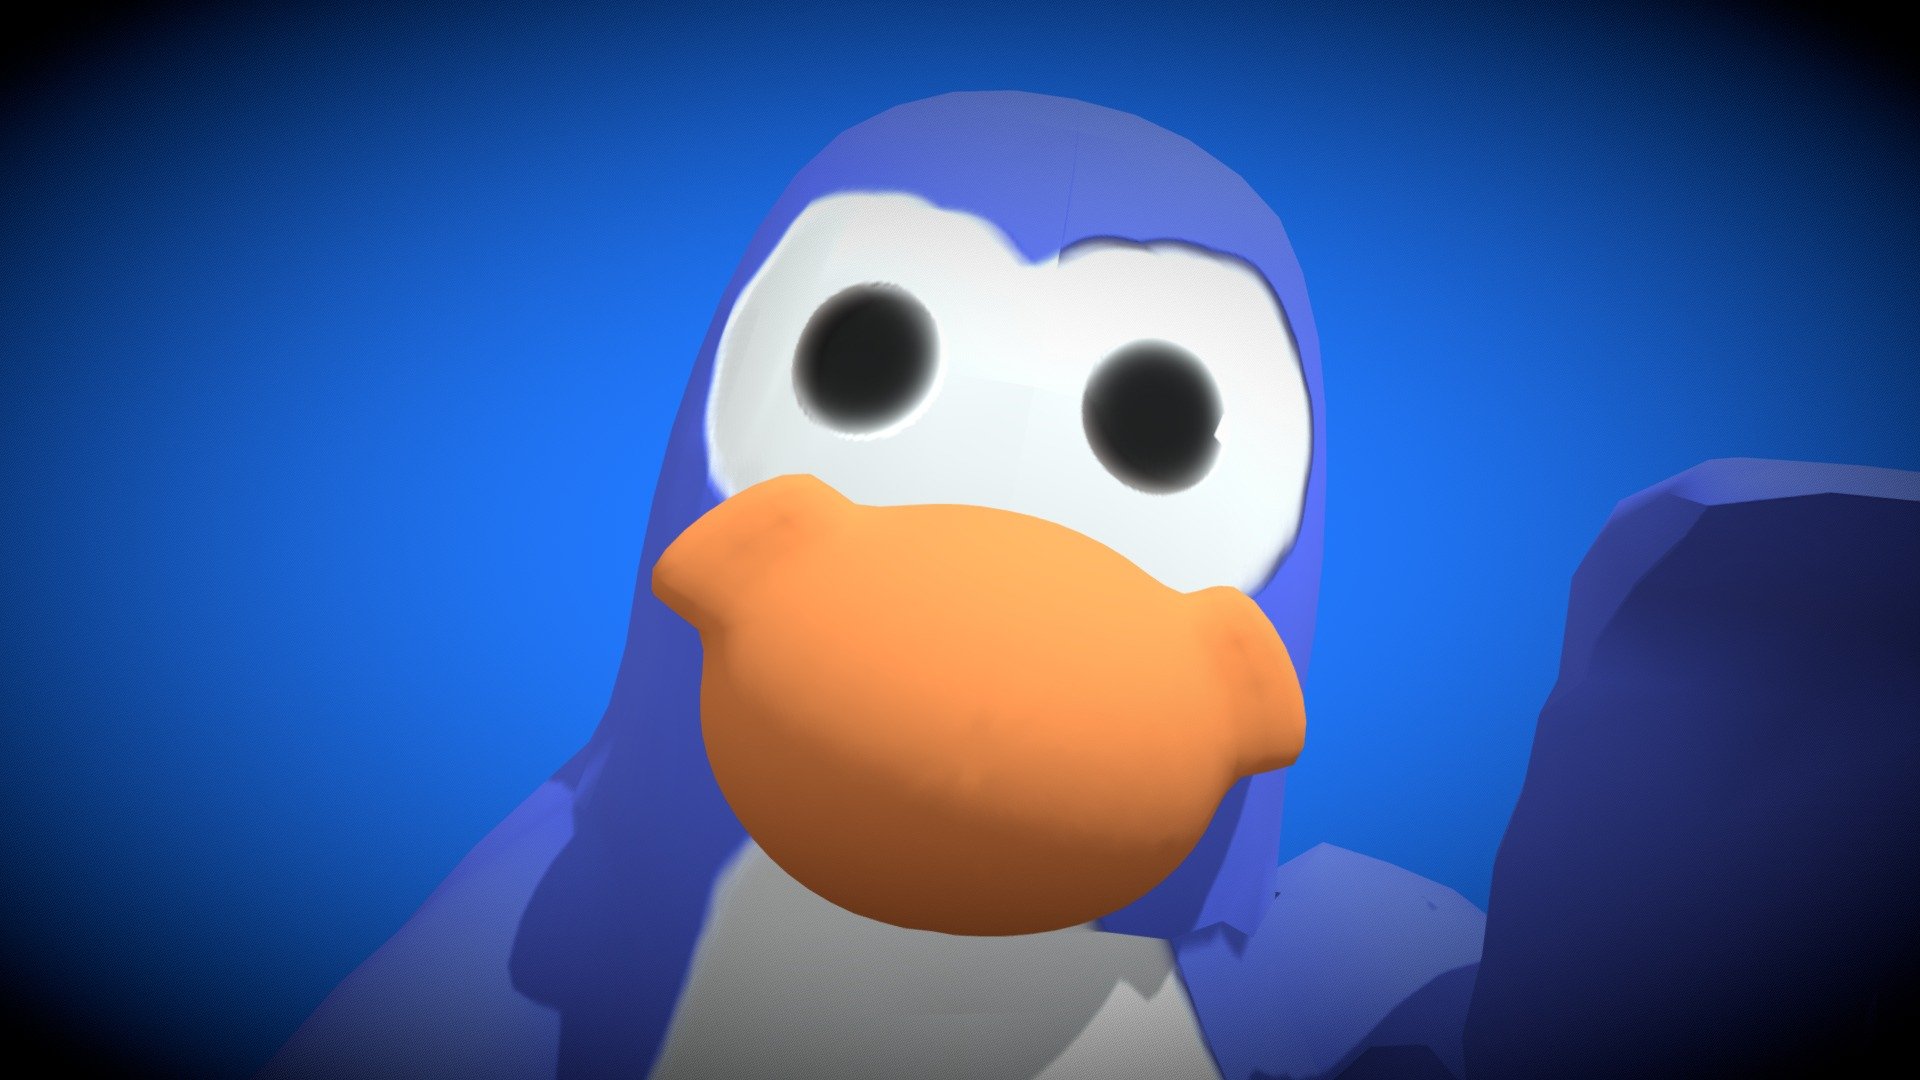 Club Penguin 3D by ClubPenguin3D - Game Jolt